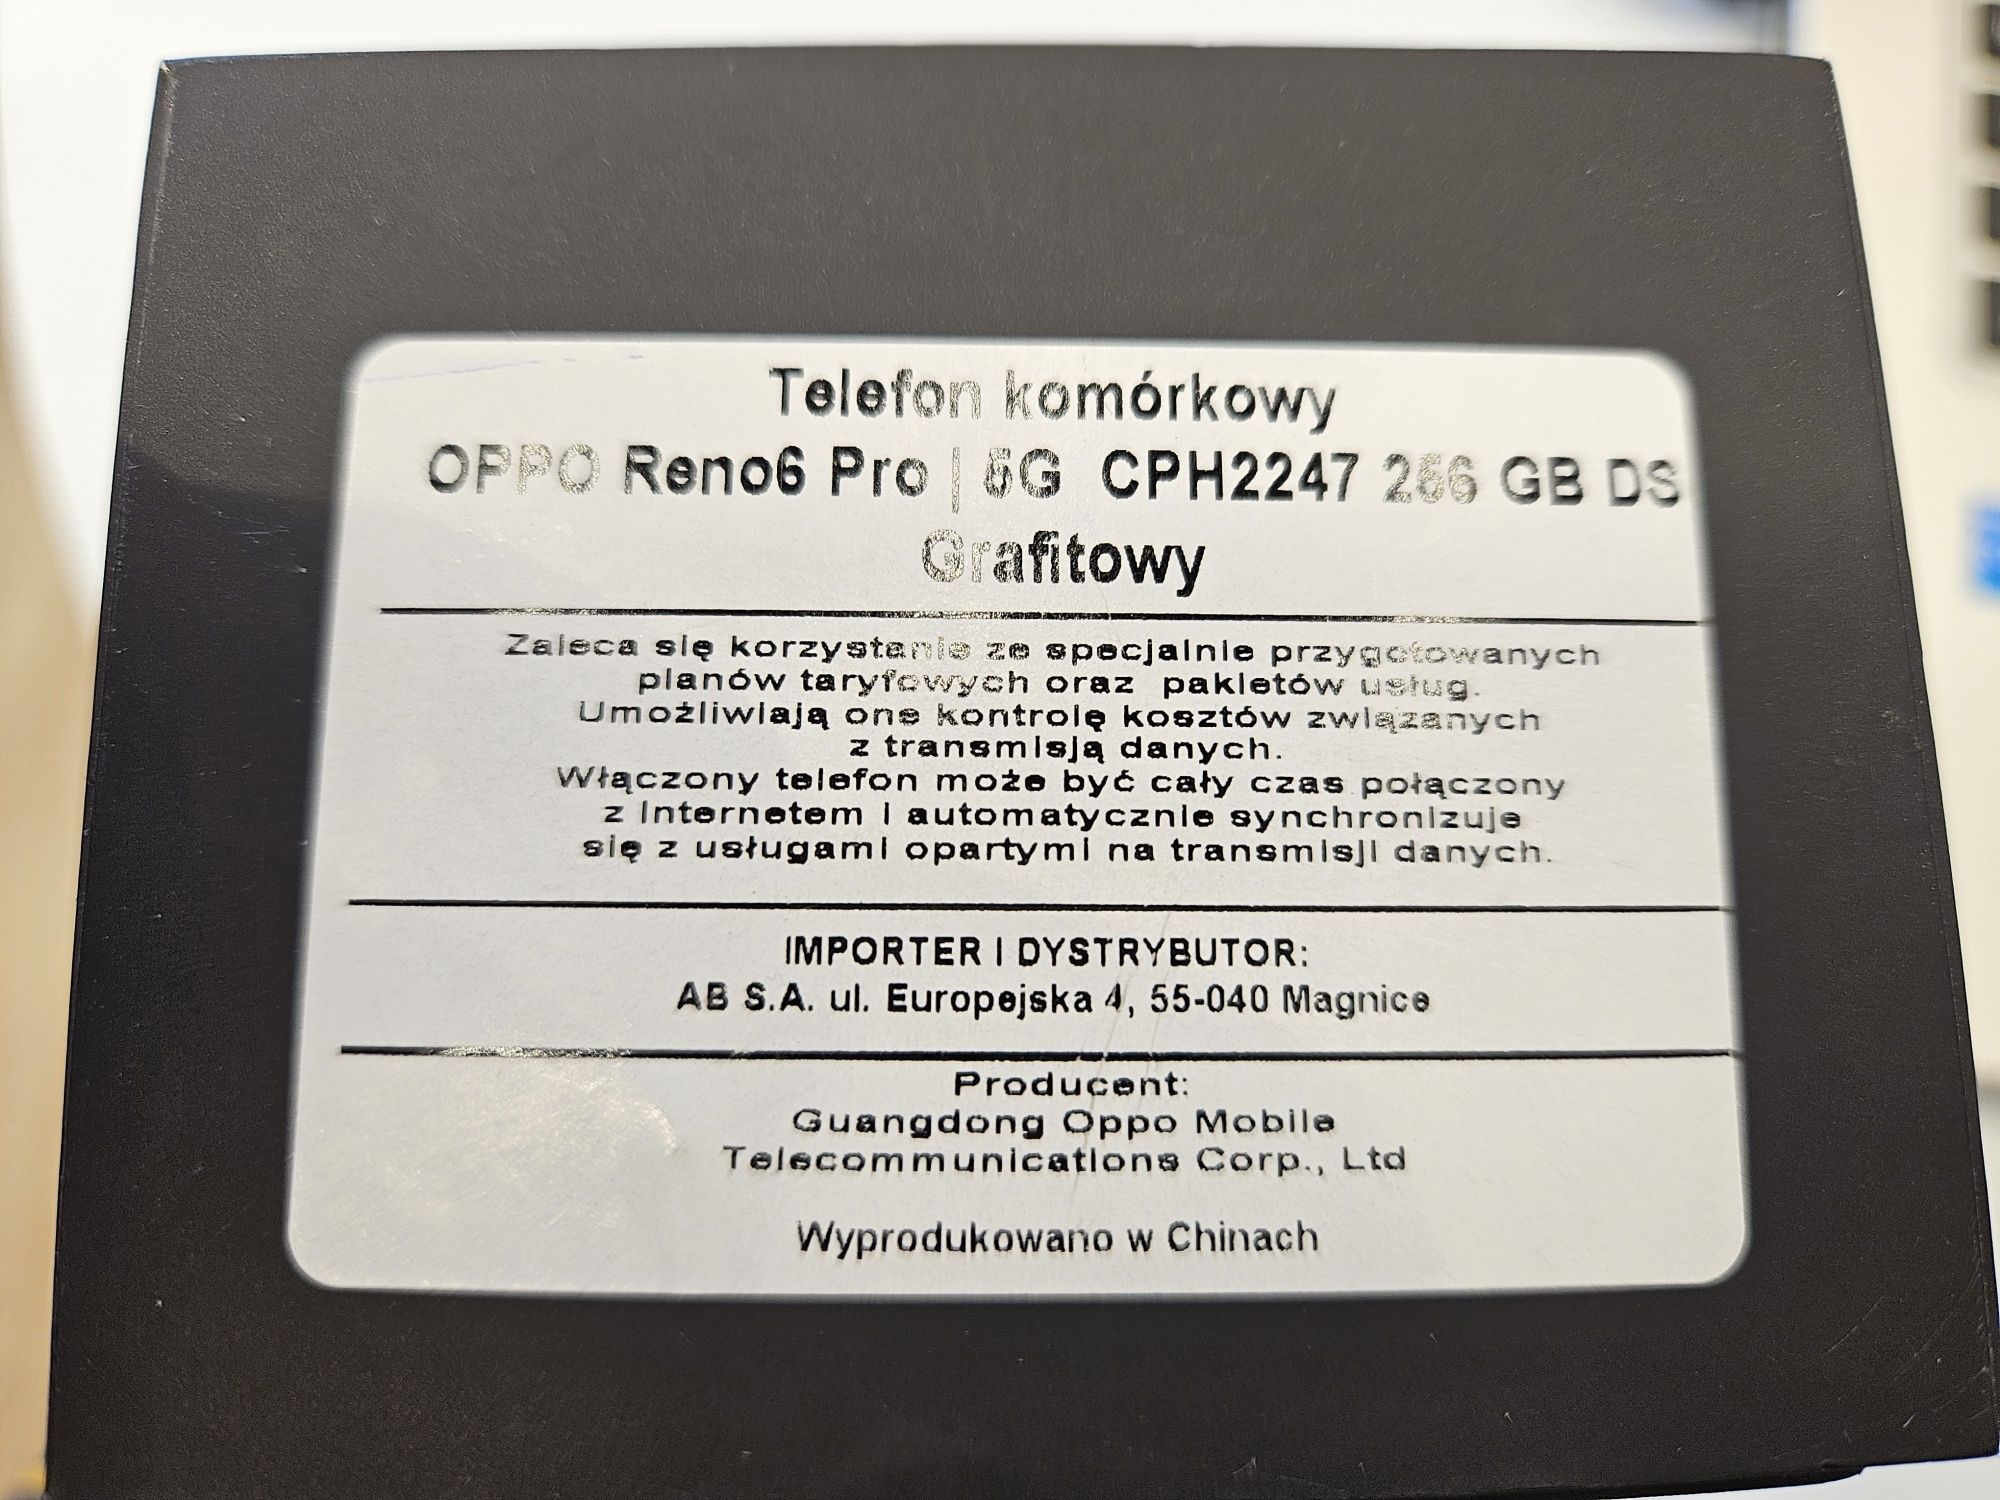 Oppo Reno6 Pro 5G